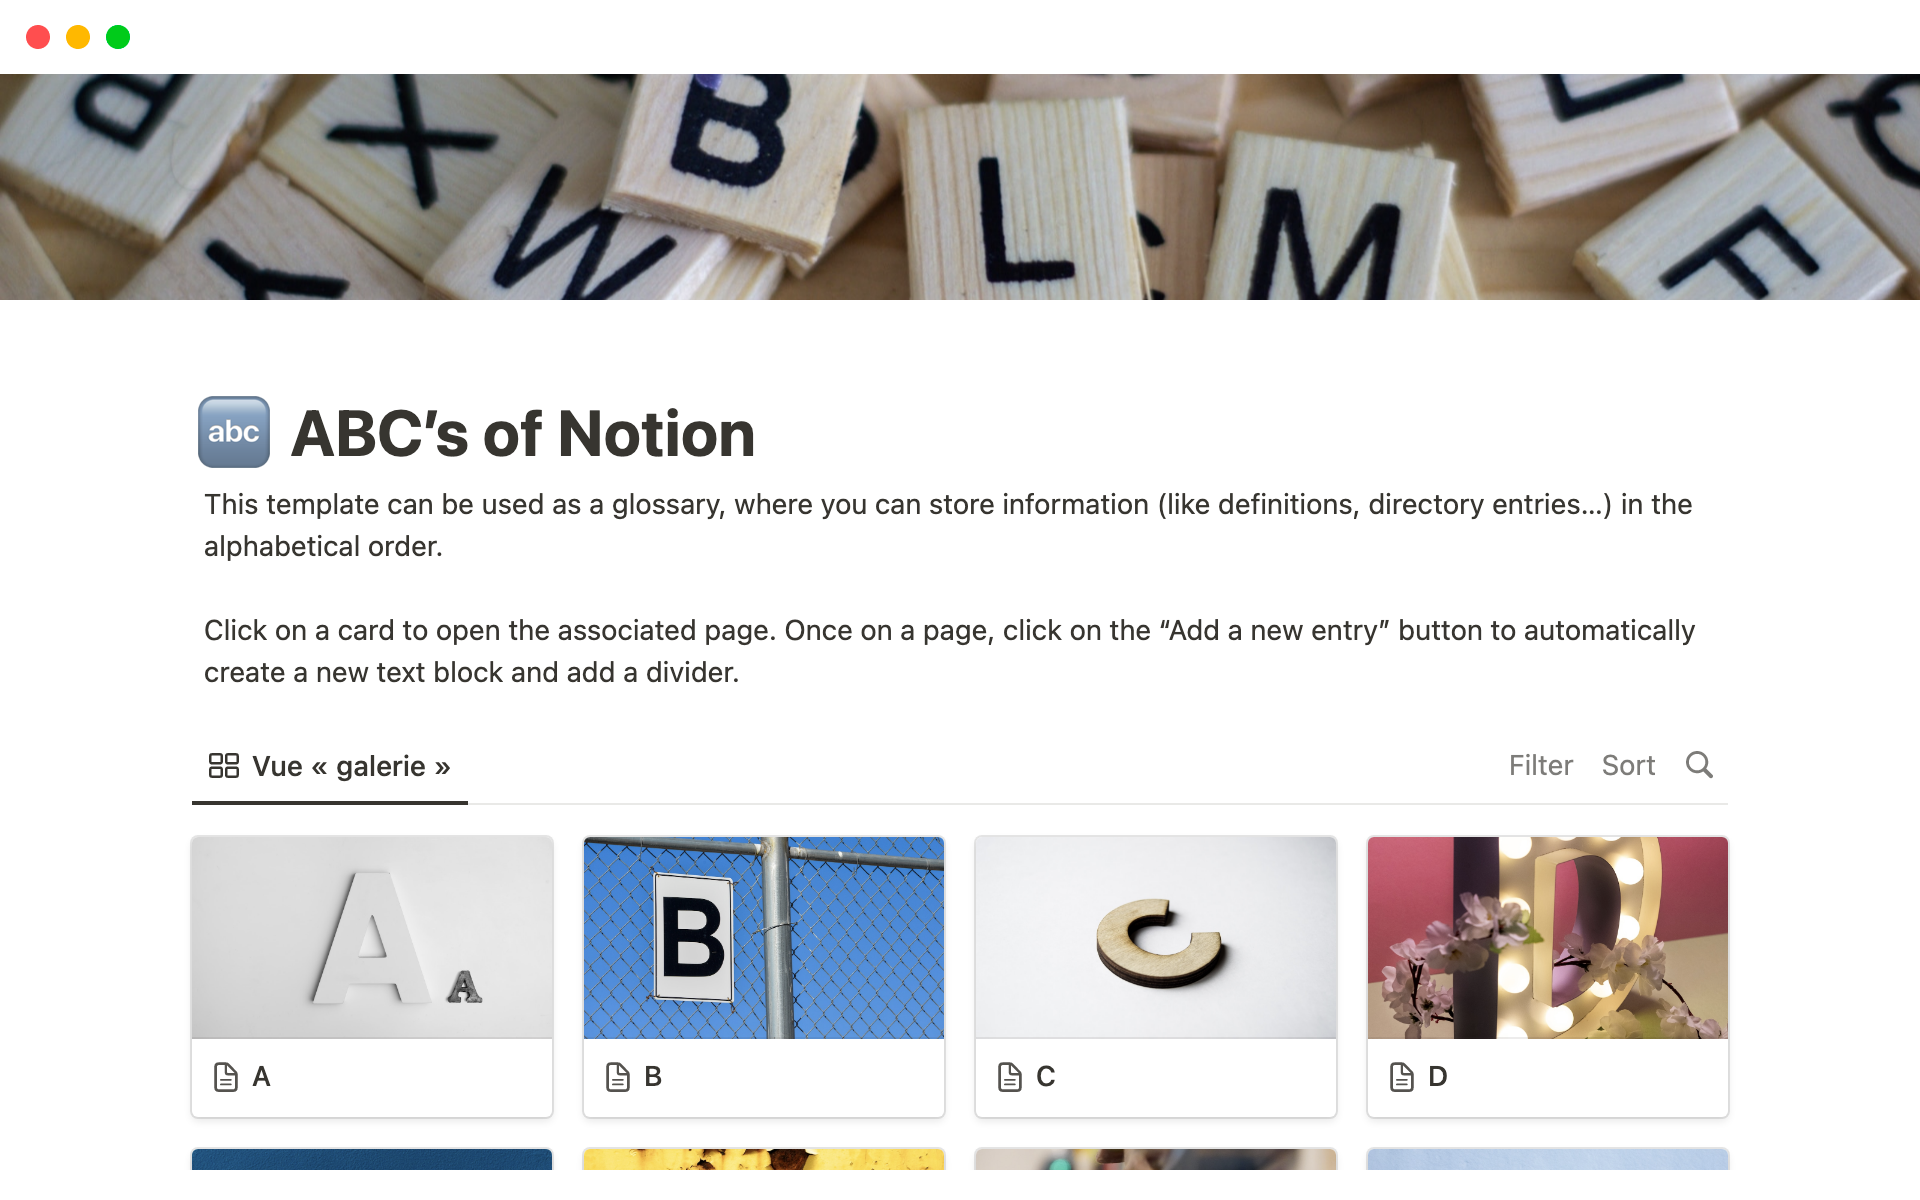 Galeria de modelos do Notion — ABC's of Notion